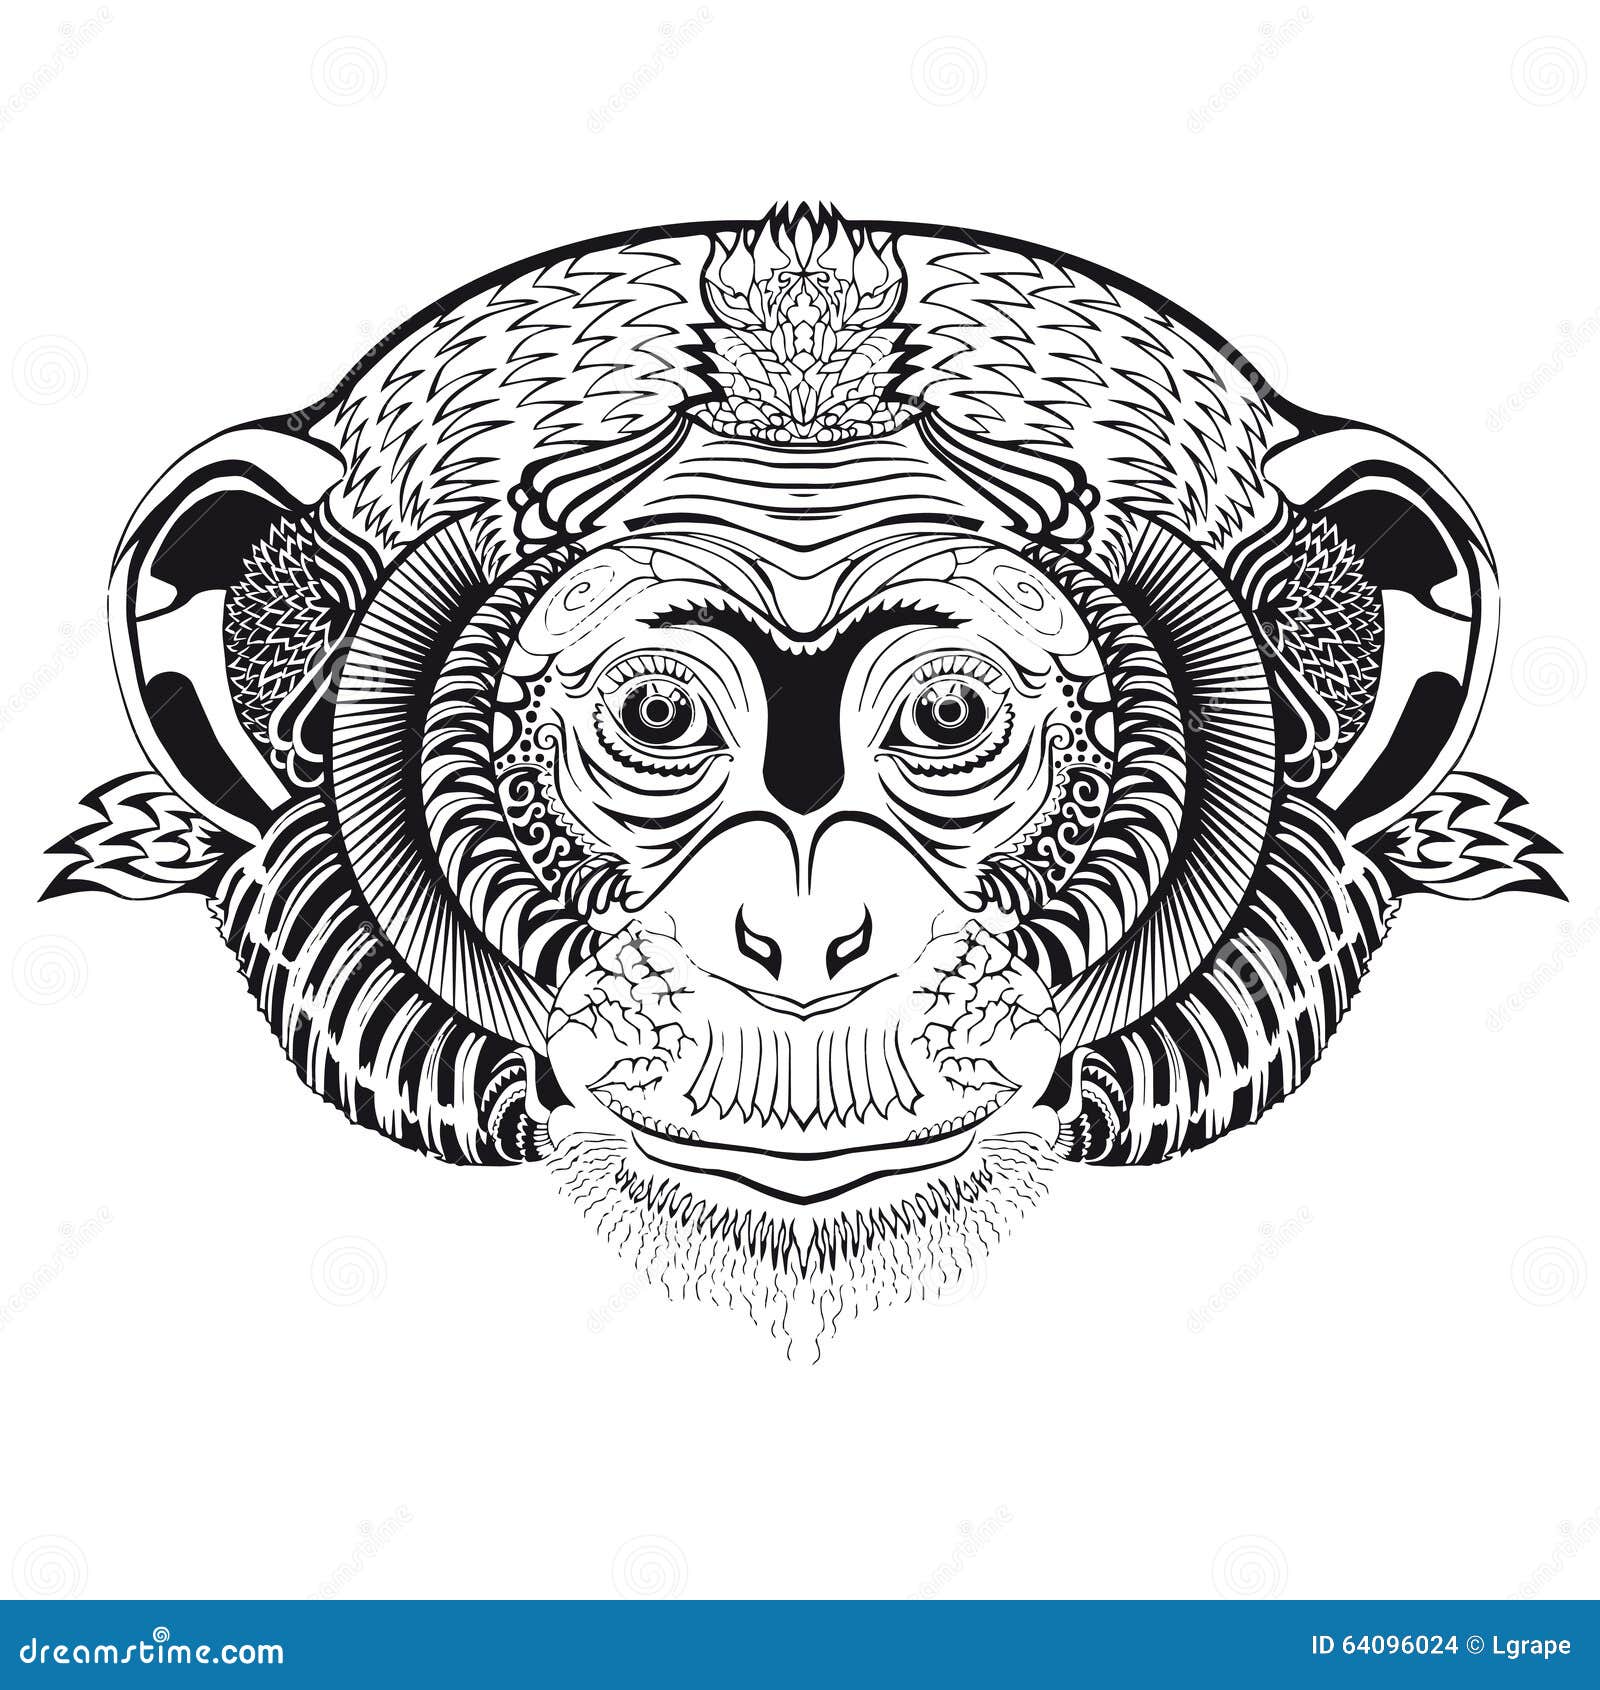 生肖纹身大全：属猴的人纹身什么好？33幅图案推荐 - 广州纹彩刺青